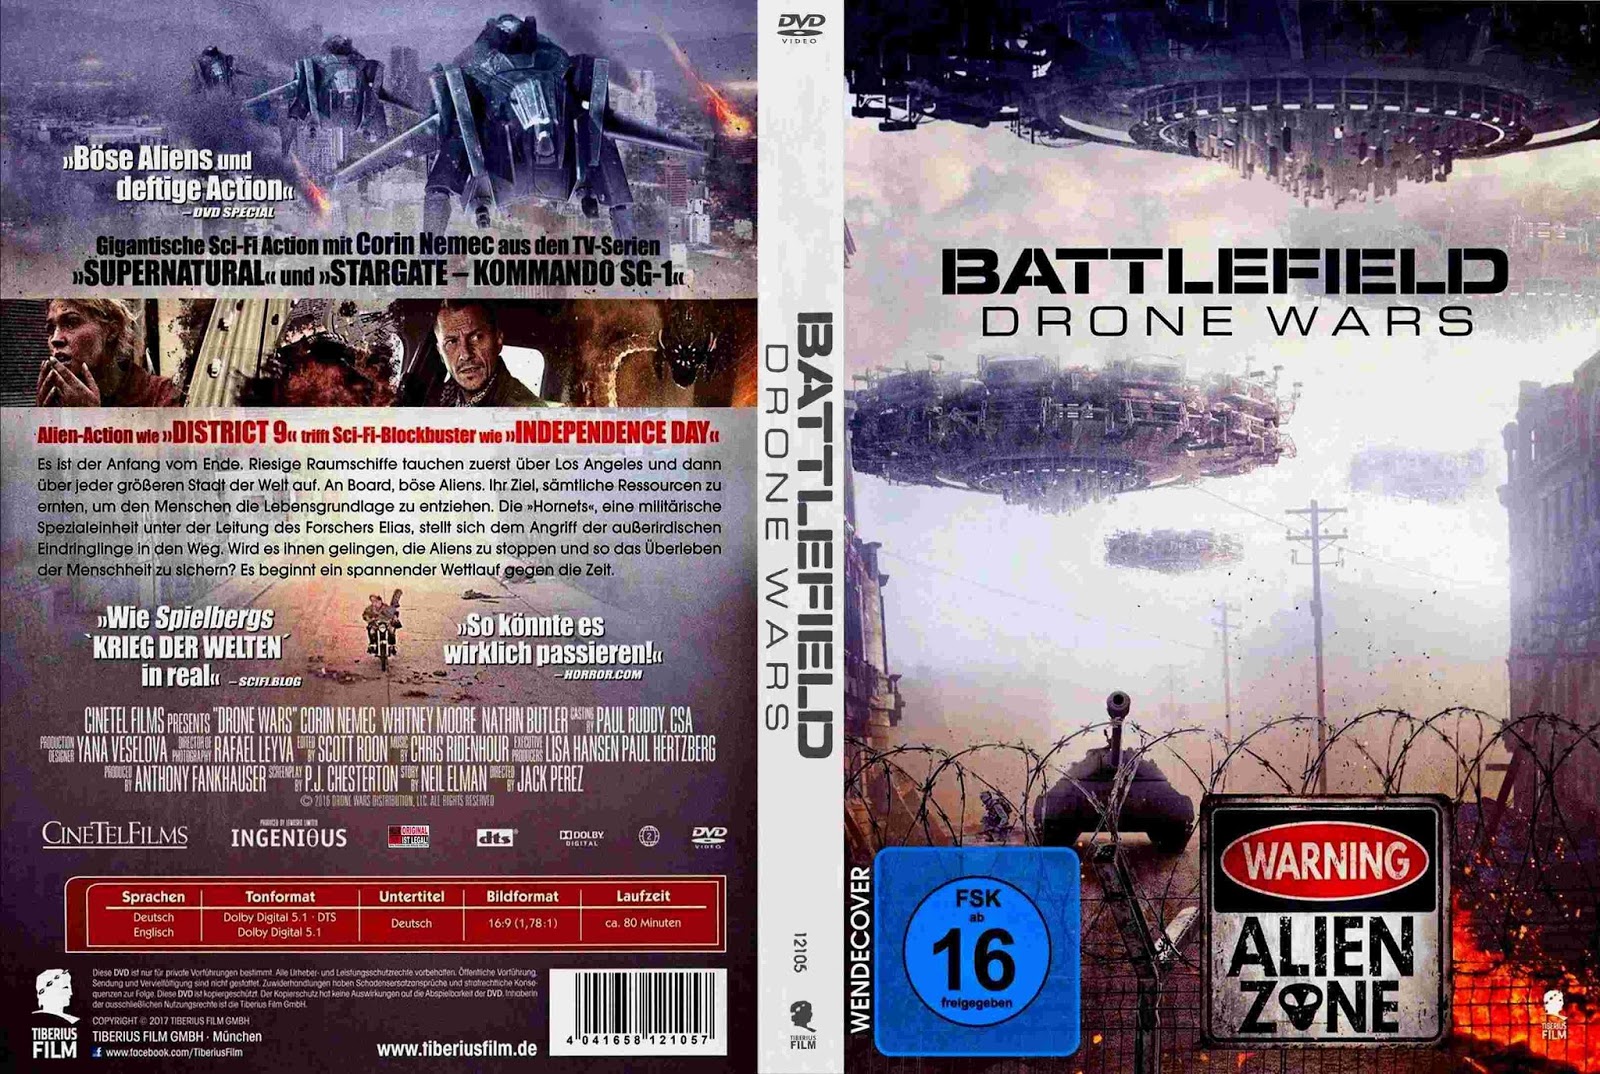 tudo-capas-04-battlefield-drone-wars-2016-german-r1-cover-dvd-movie